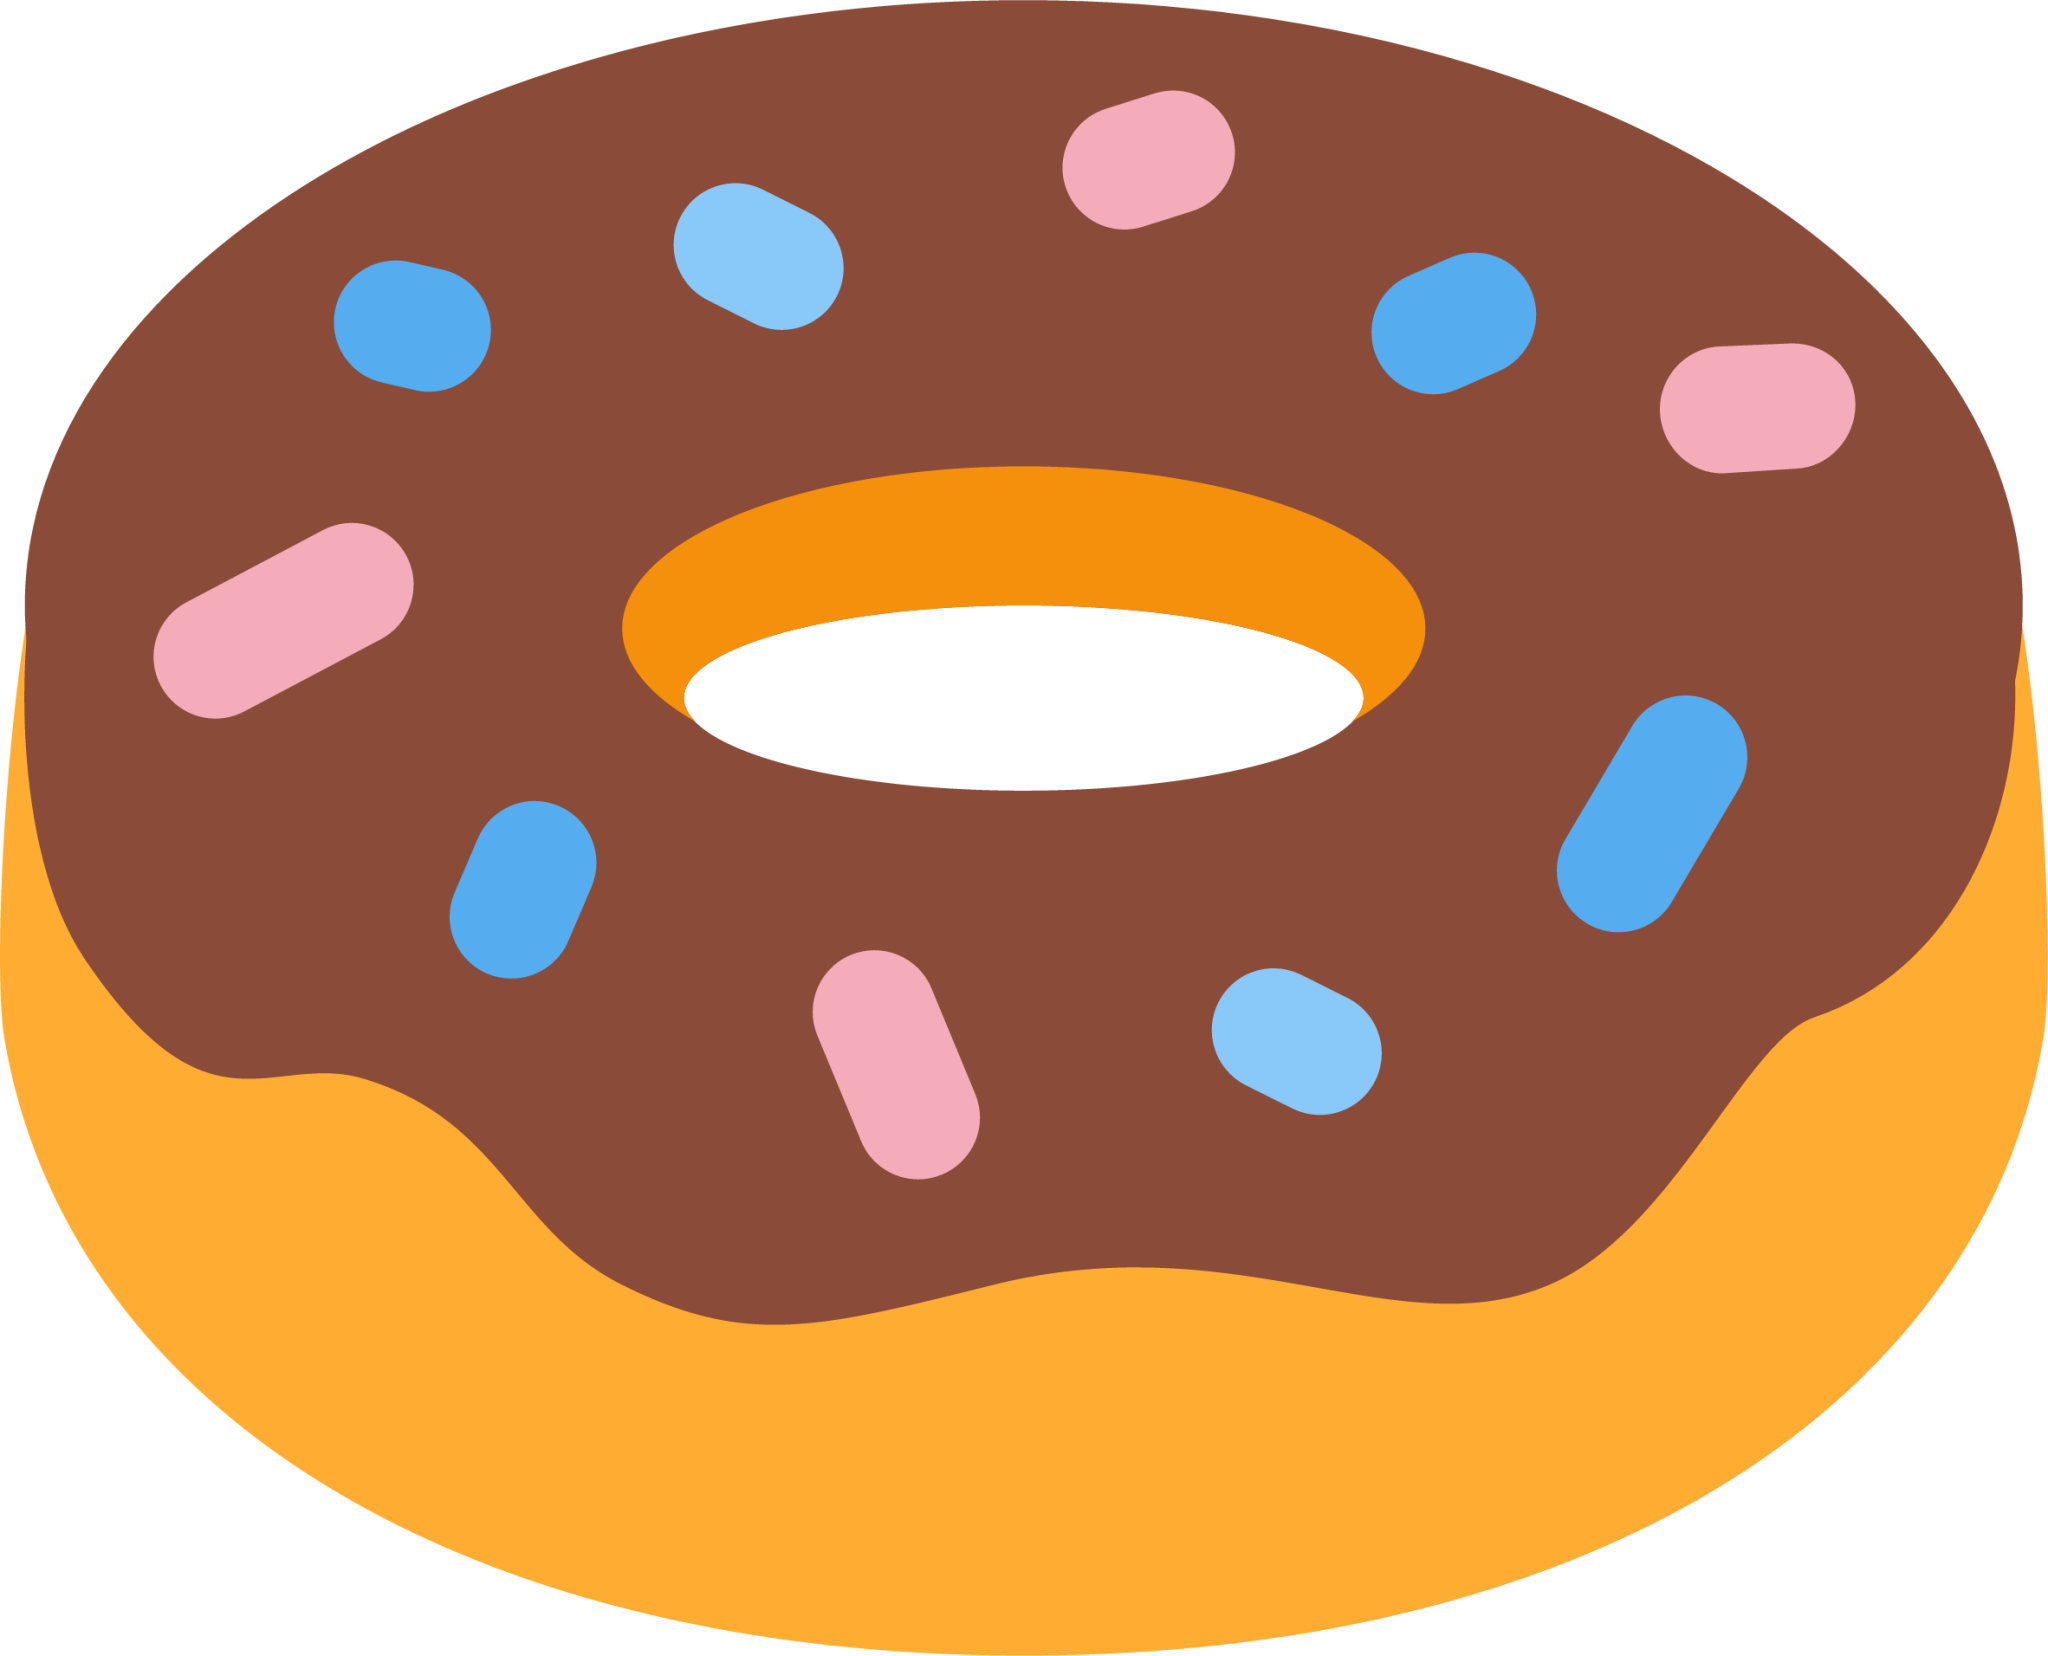 doughnut emoji